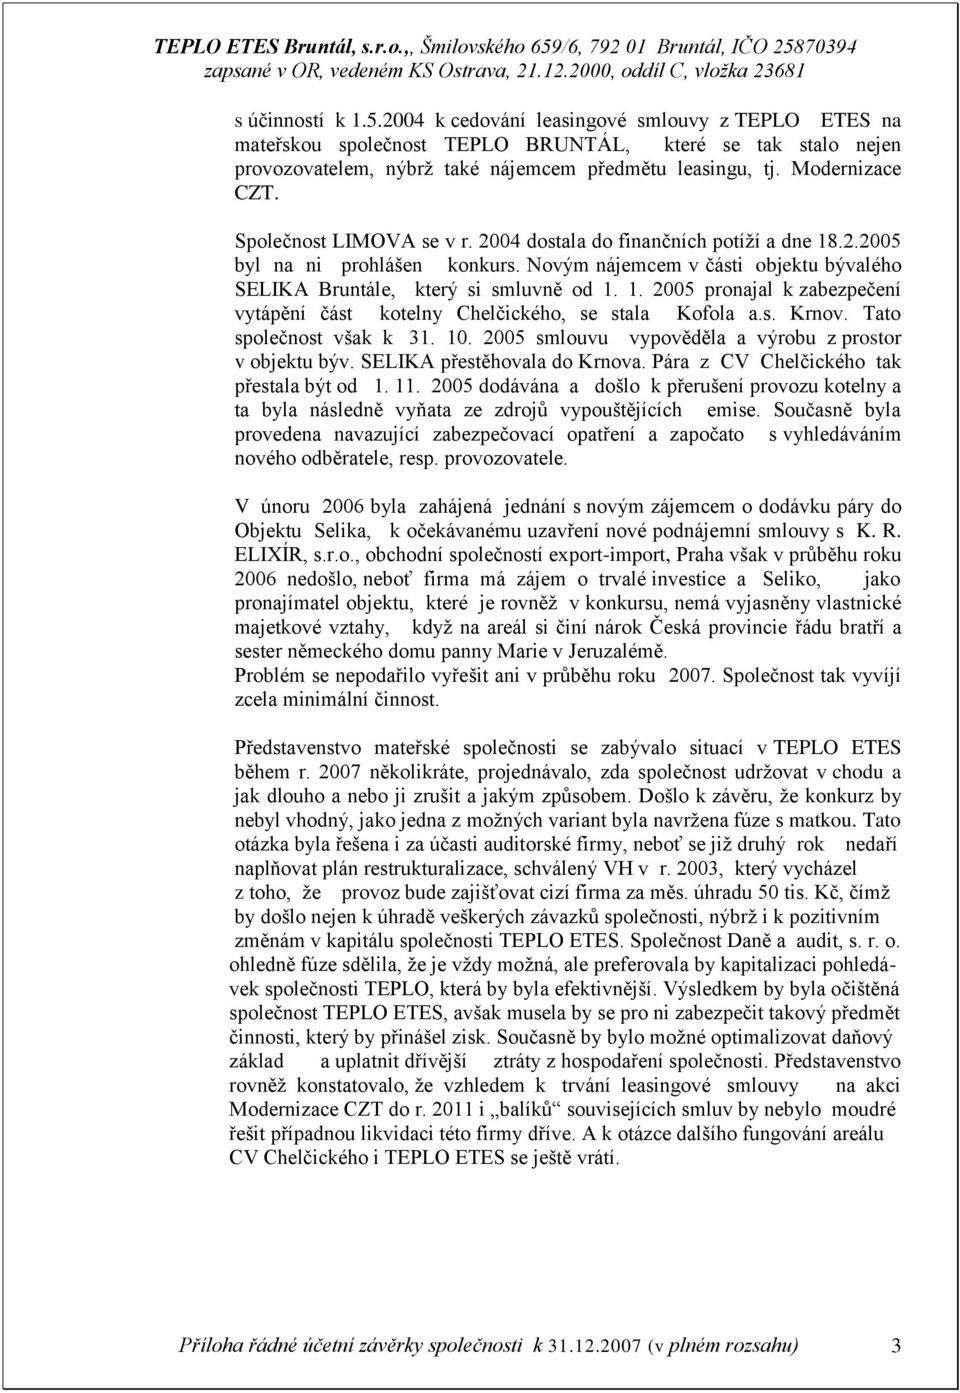 Novým nájemcem v části objektu bývalého SELIKA Bruntále, který si smluvně od 1. 1. 2005 pronajal k zabezpečení vytápění část kotelny Chelčického, se stala Kofola a.s. Krnov. Tato společnost však k 31.